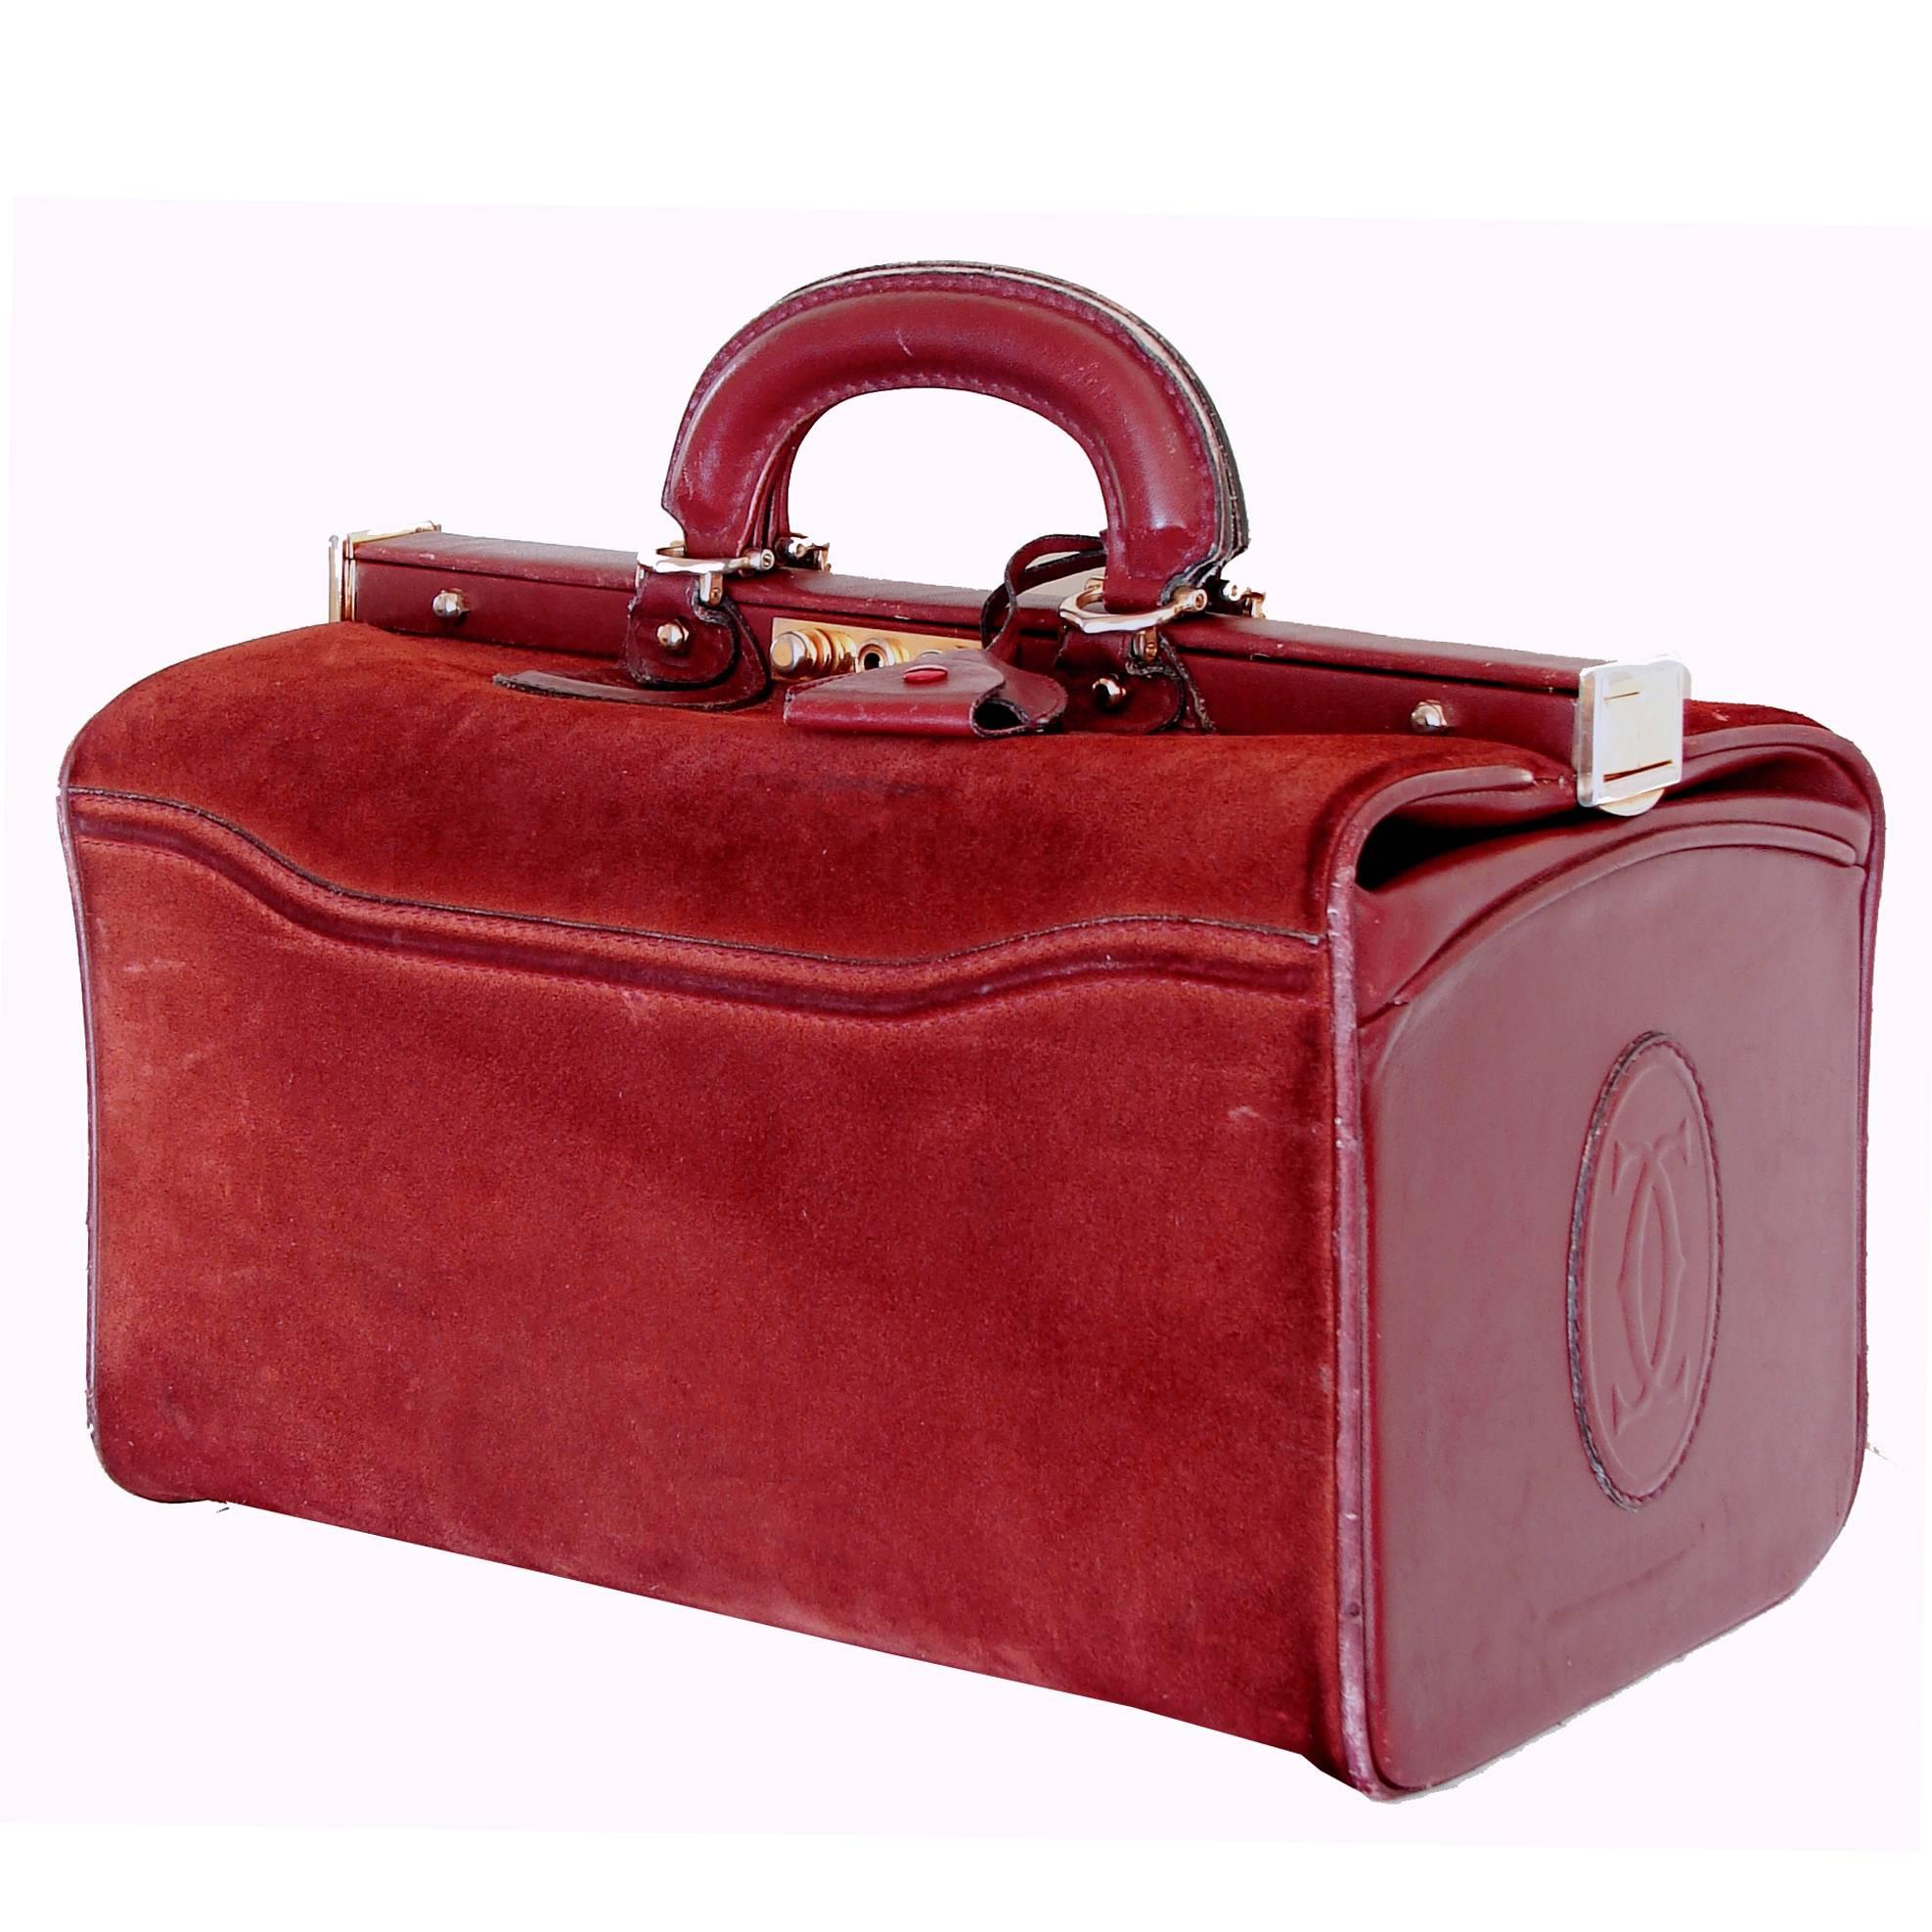 Cartier Large Bordeaux Suede Leather Doctors Bag Train Case 1980s with Dust Bag